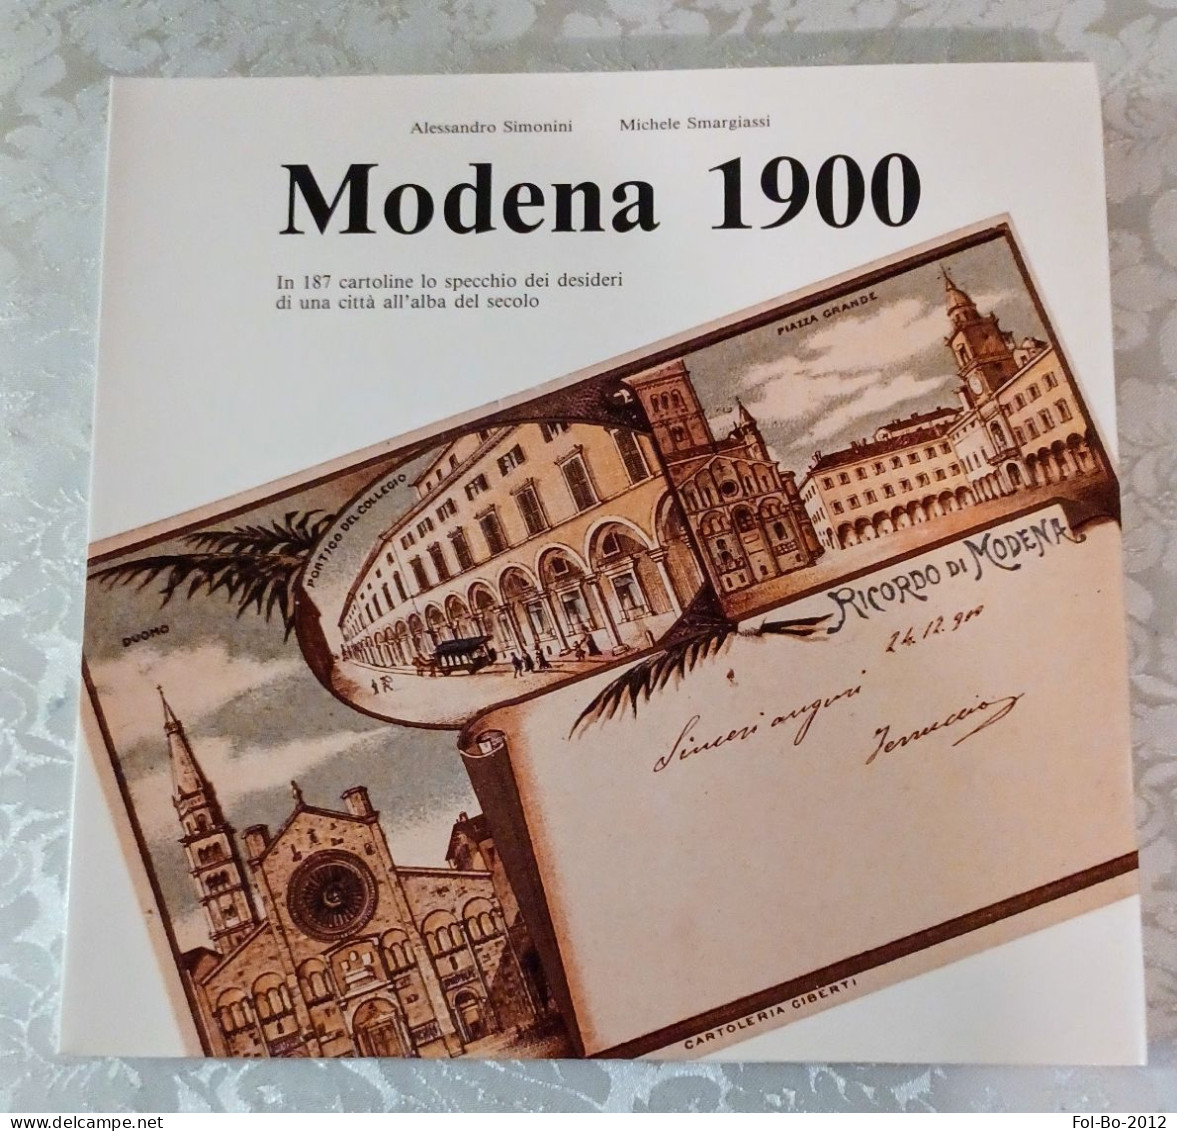 Modena 1900 In 187 Cartoline Del 1989 Come Un Catalogo - Libri & Cataloghi